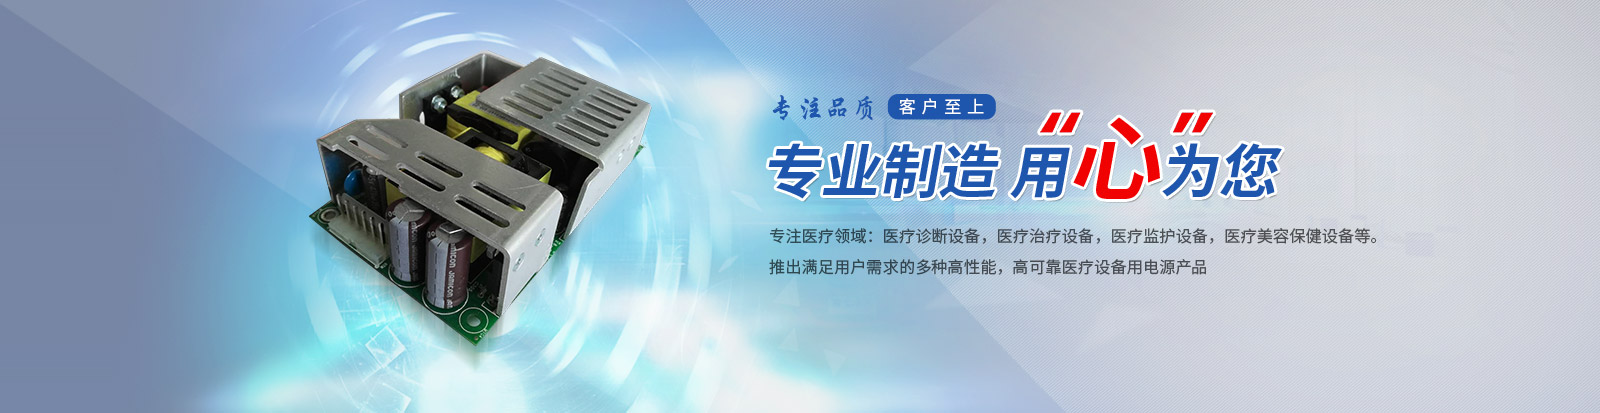 上海標俊電子科技有限公司